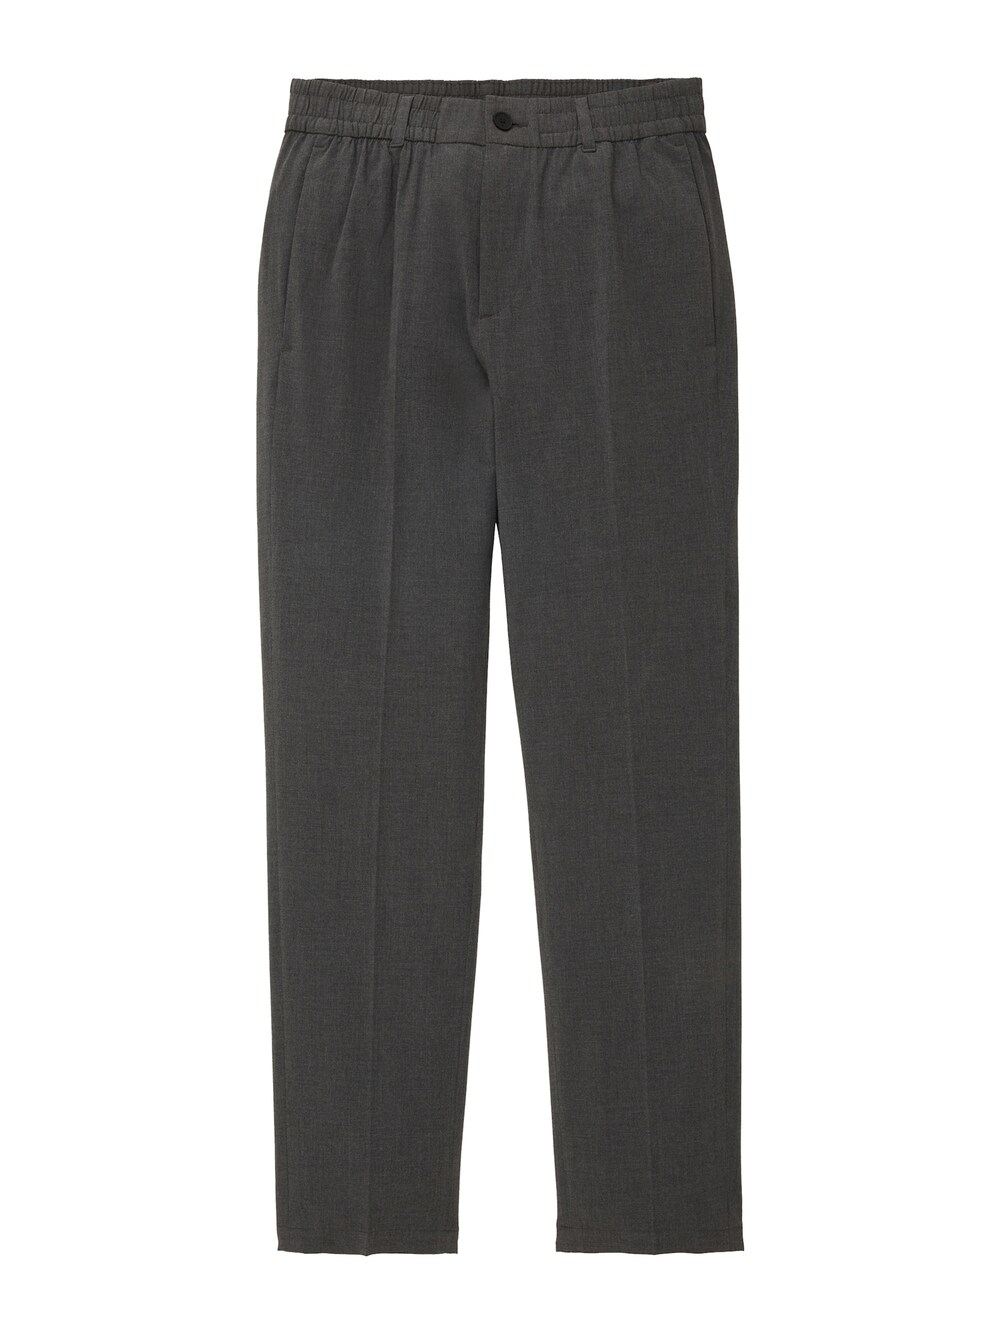 Обычные брюки чинос TOM TAILOR DENIM, темно-серый мужской домашний комплект серый с темно синими шортами tom tailor 70973 5609 811 m 50